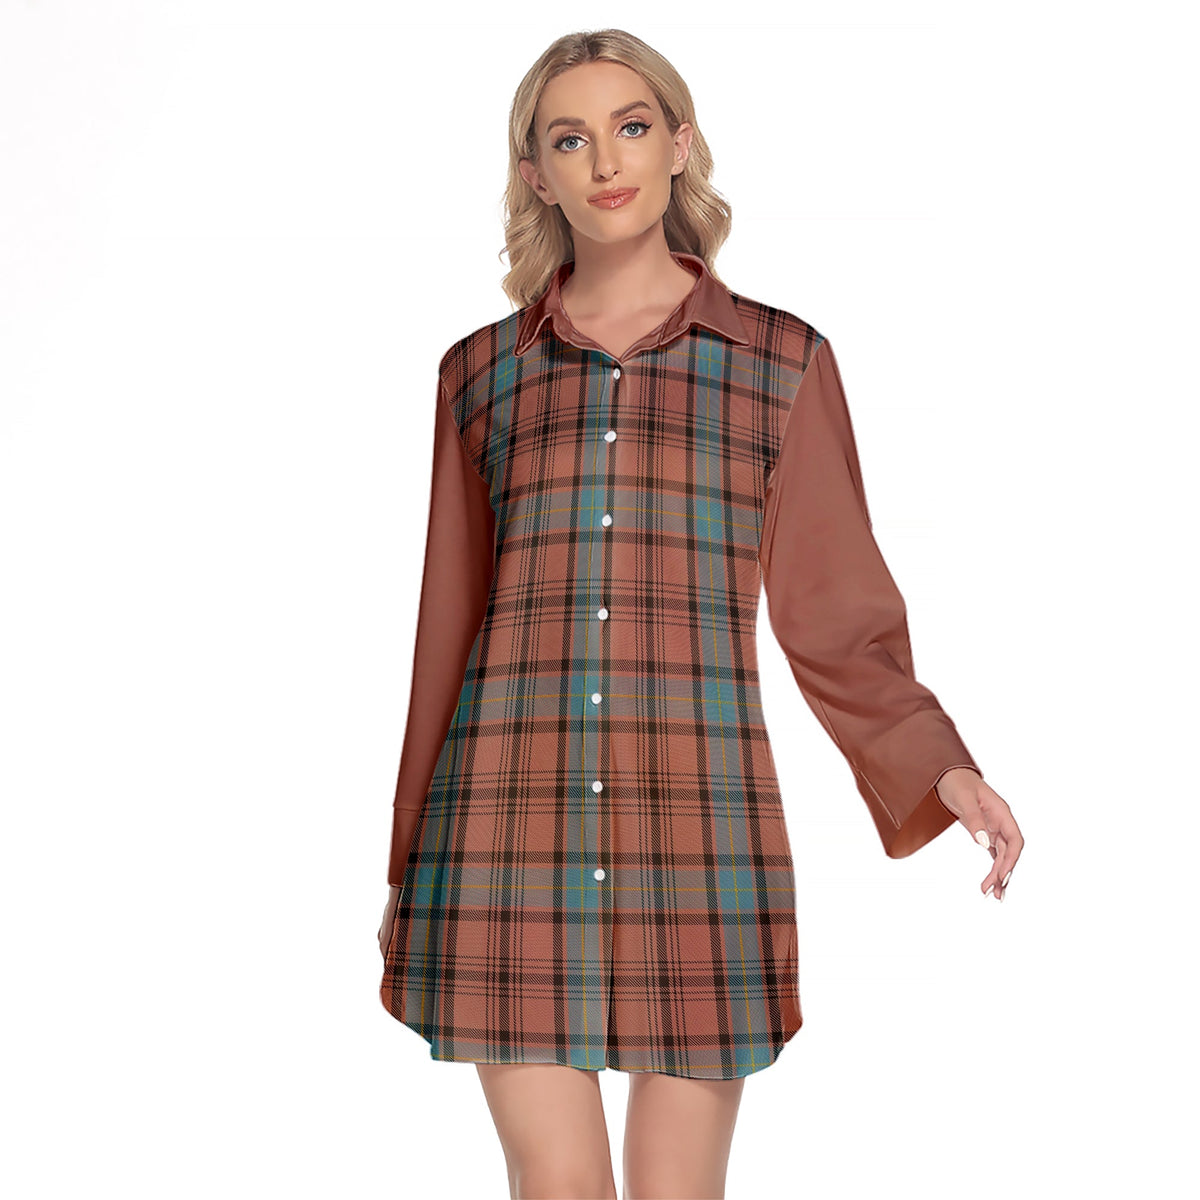 Hannay Dress Tartan Women's Lapel Shirt Dress With Long Sleeve